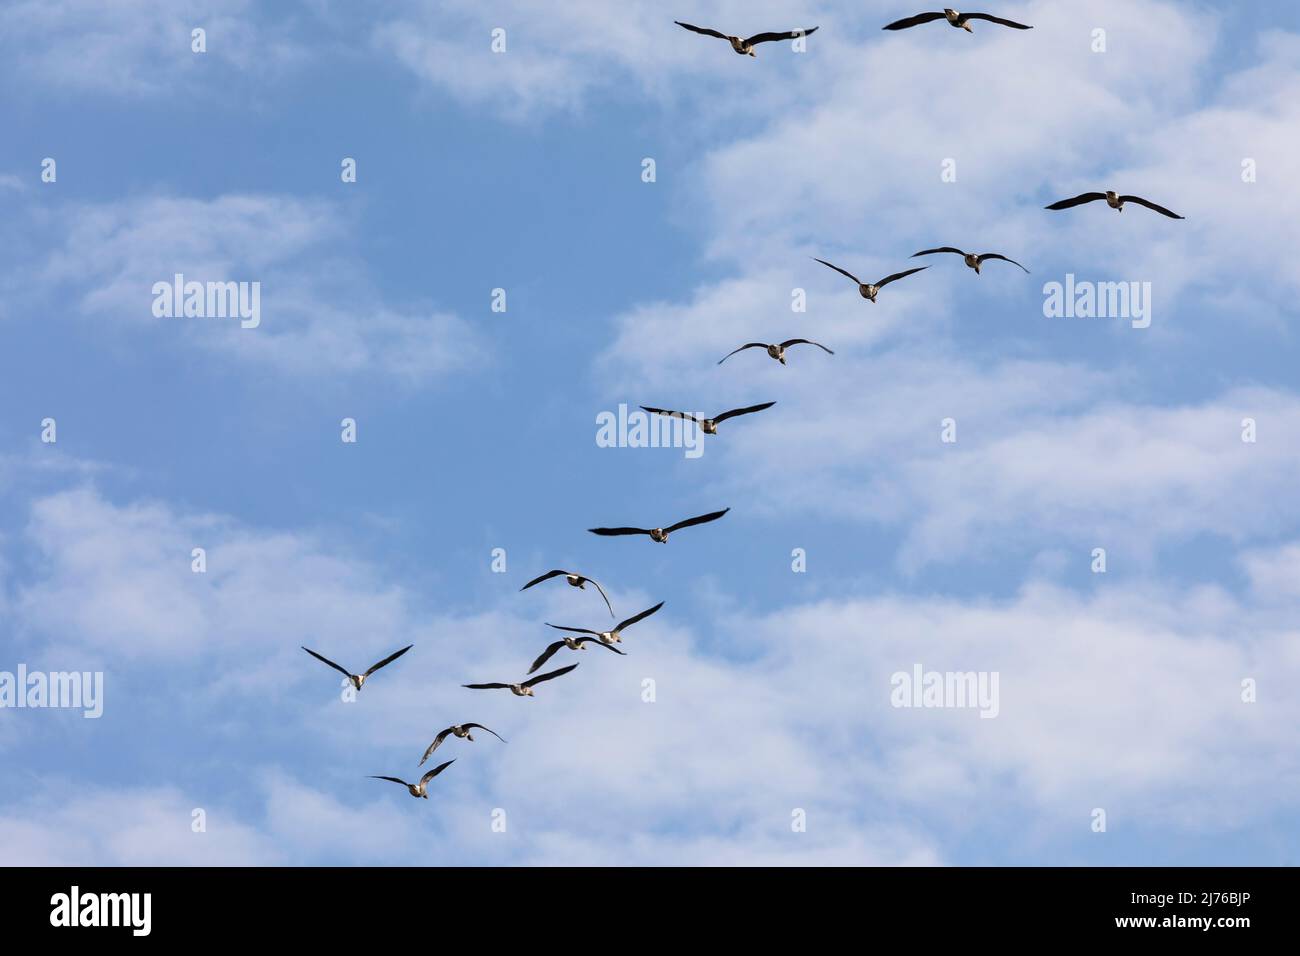 Europe, Poland, Podlaskie Voivodeship, gray geese in flight Stock Photo